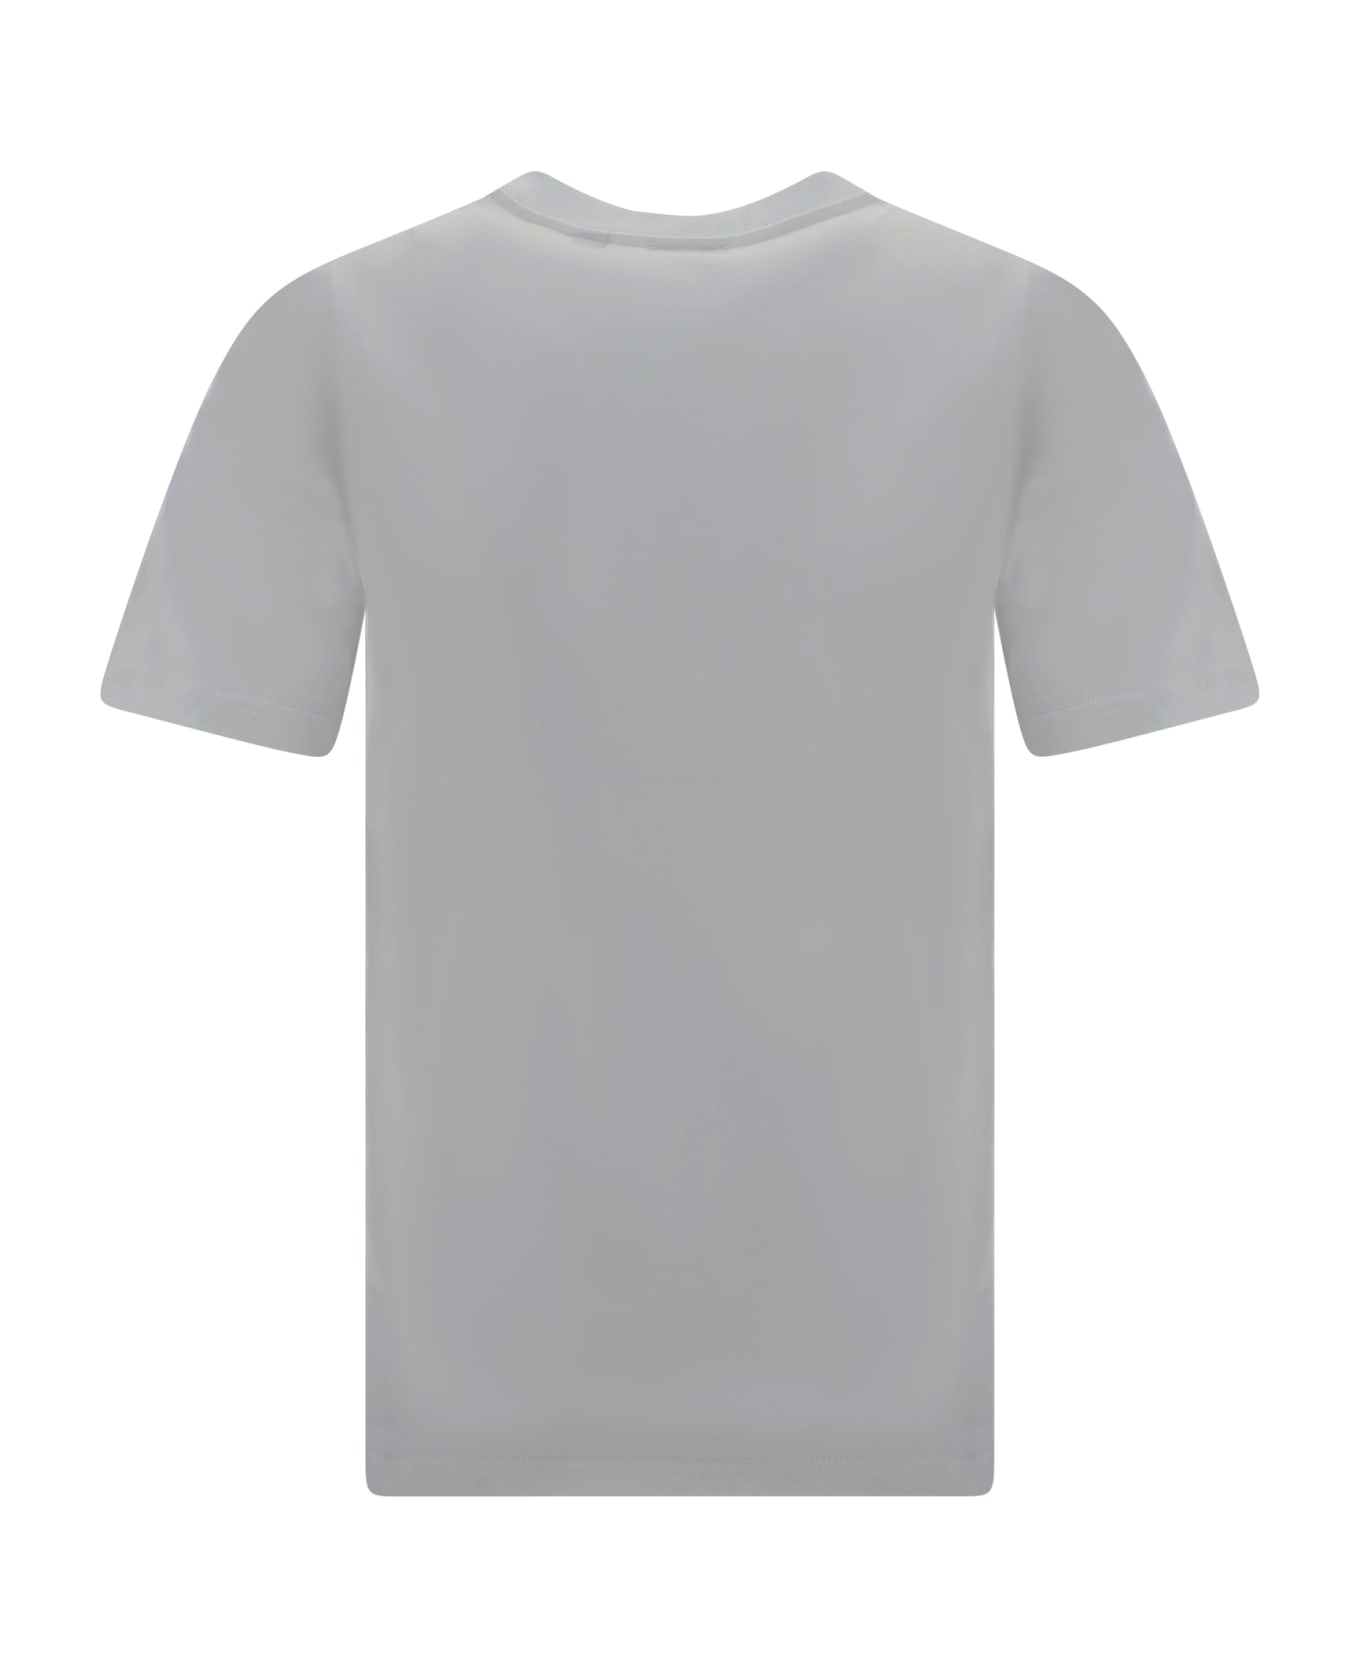 Burberry White Cotton T-shirt - White Tシャツ